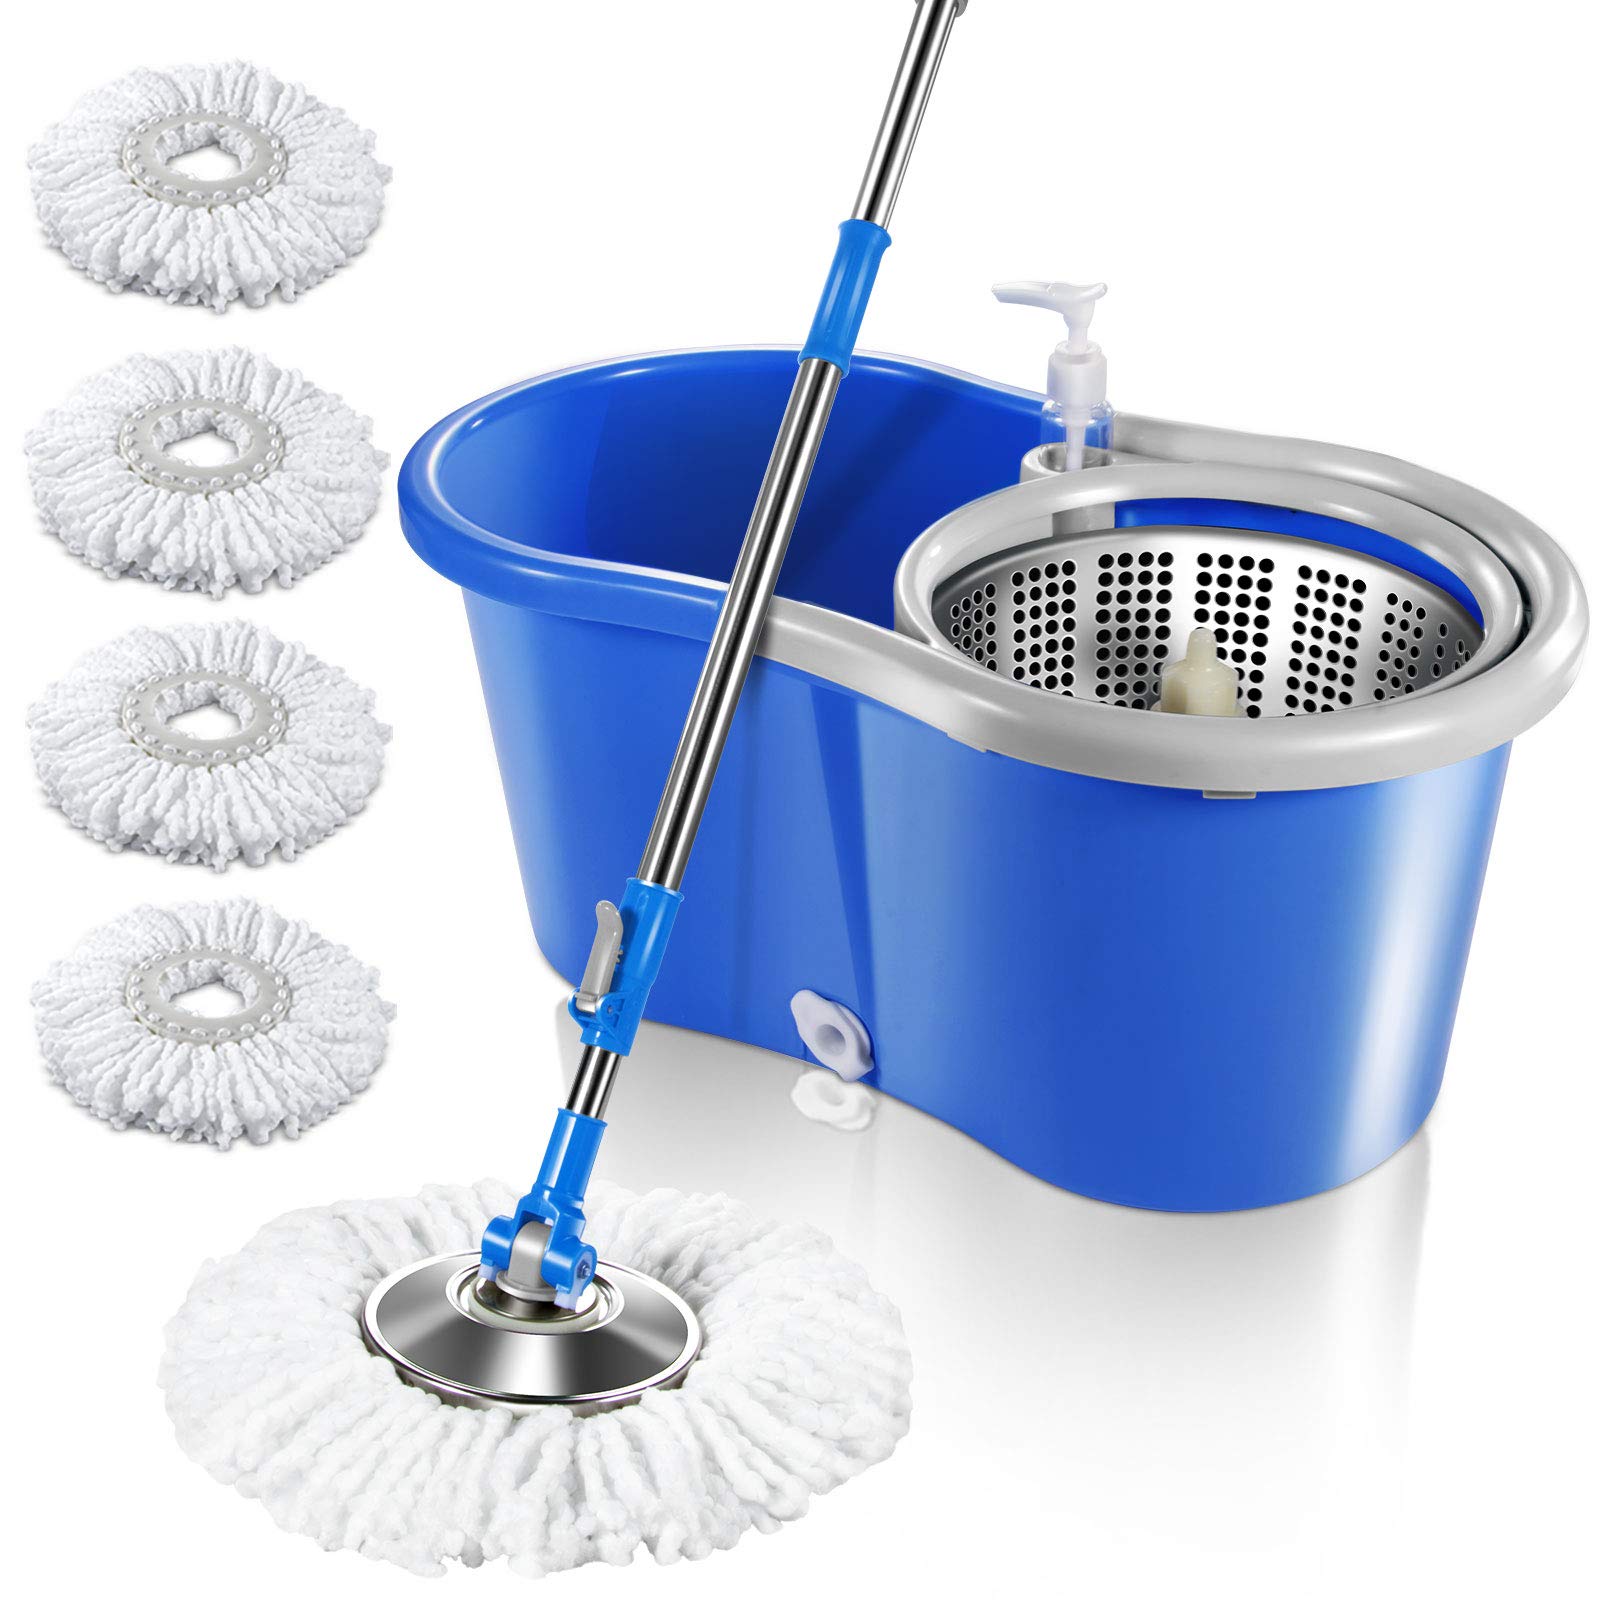 MASTERTOP + 360 Spin Mop & Bucket Floor Cleaning